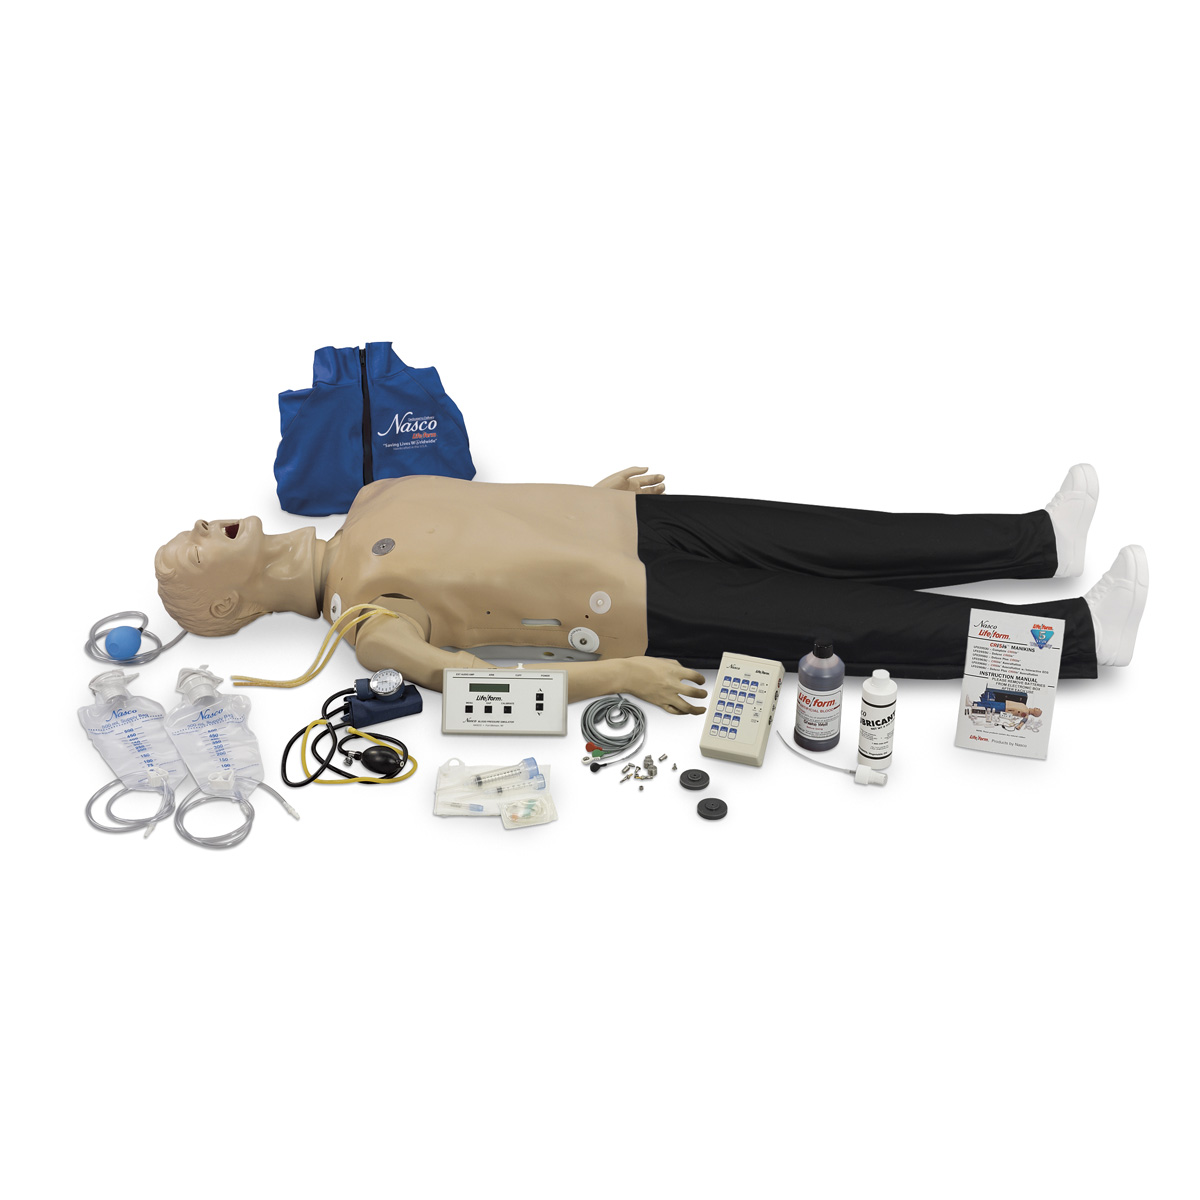 Deluxe CRiSis™ с ЭКГ и функцией углубленного обучения обеспечению проходимости дыхательных путей